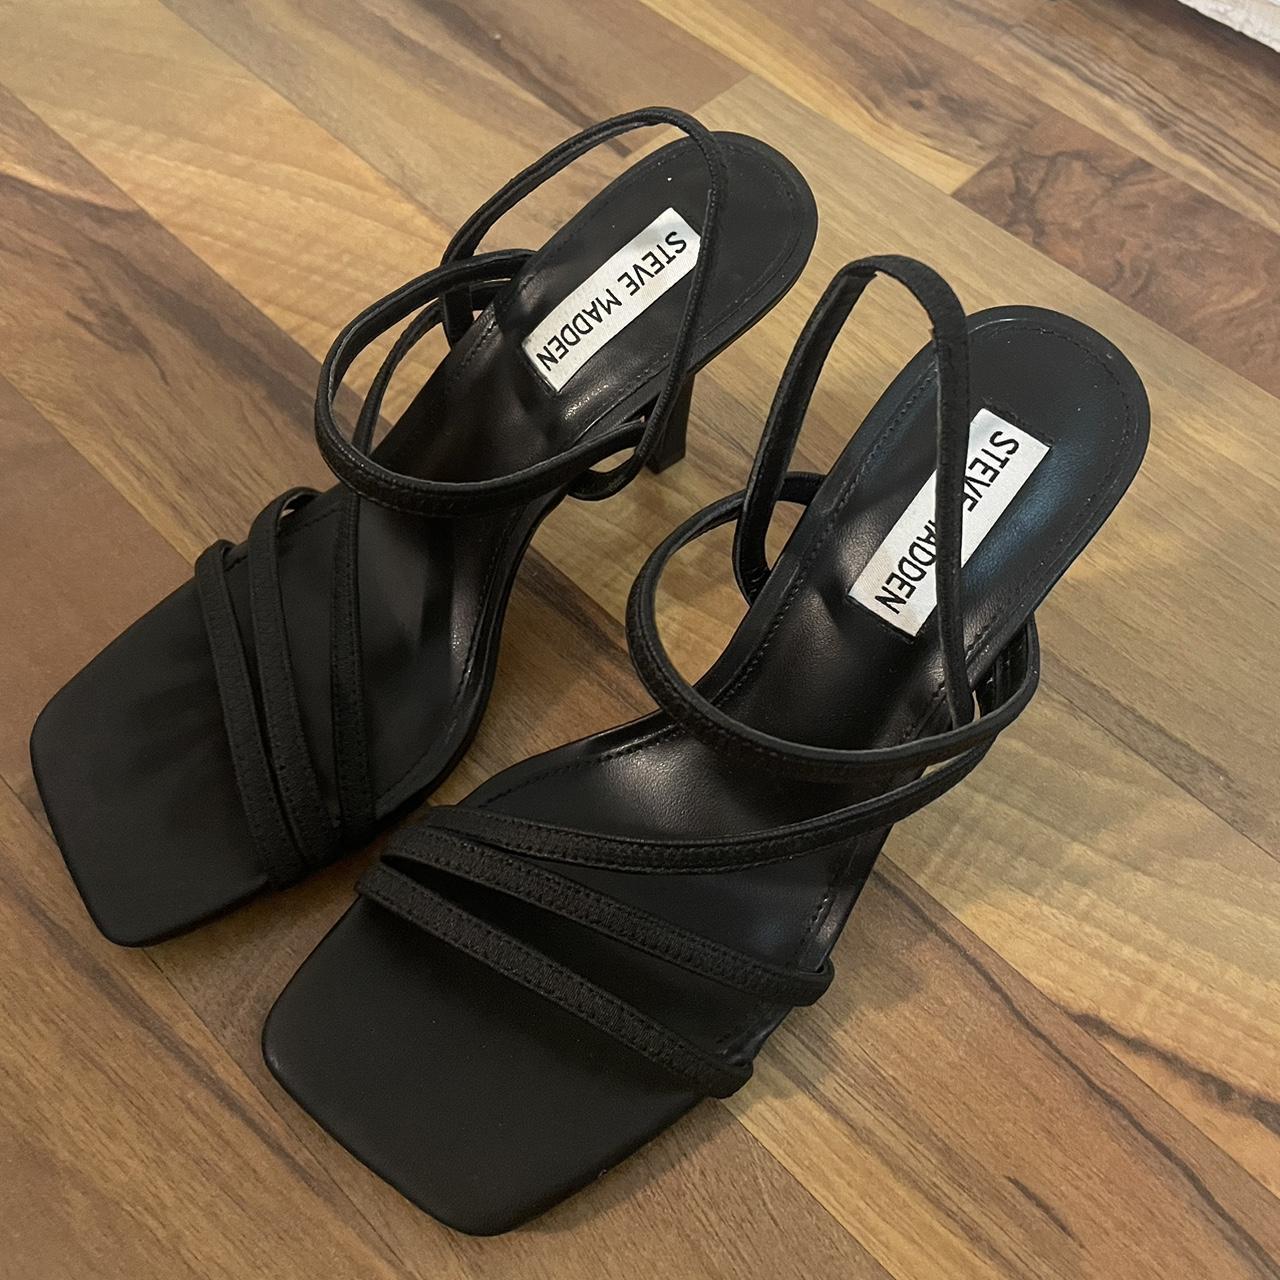 Steve Madden Women's Sandals | Depop